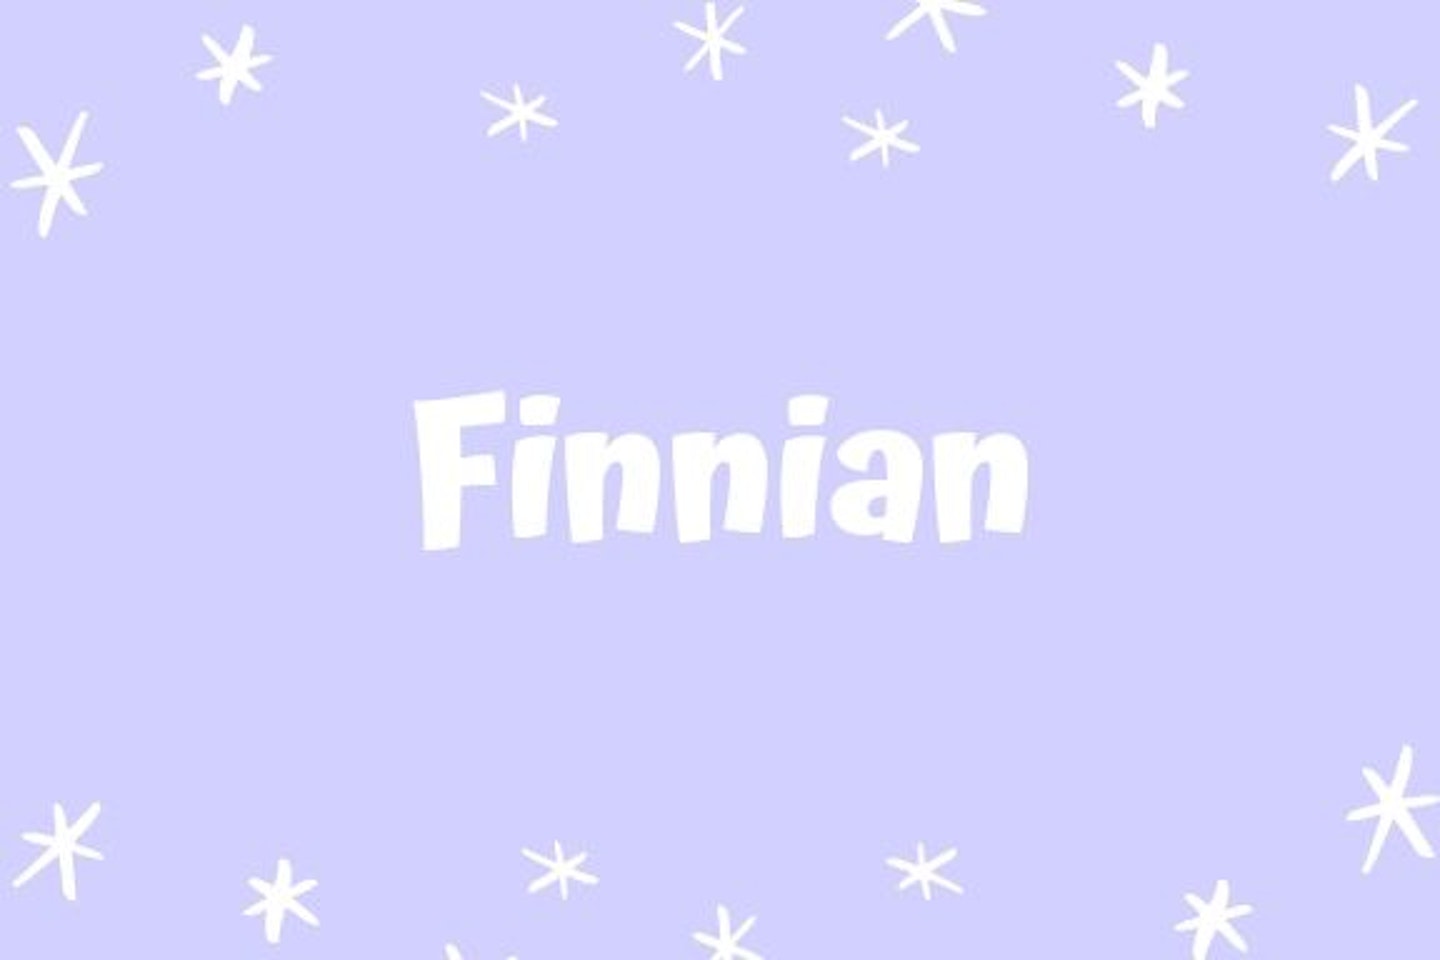 Finnian